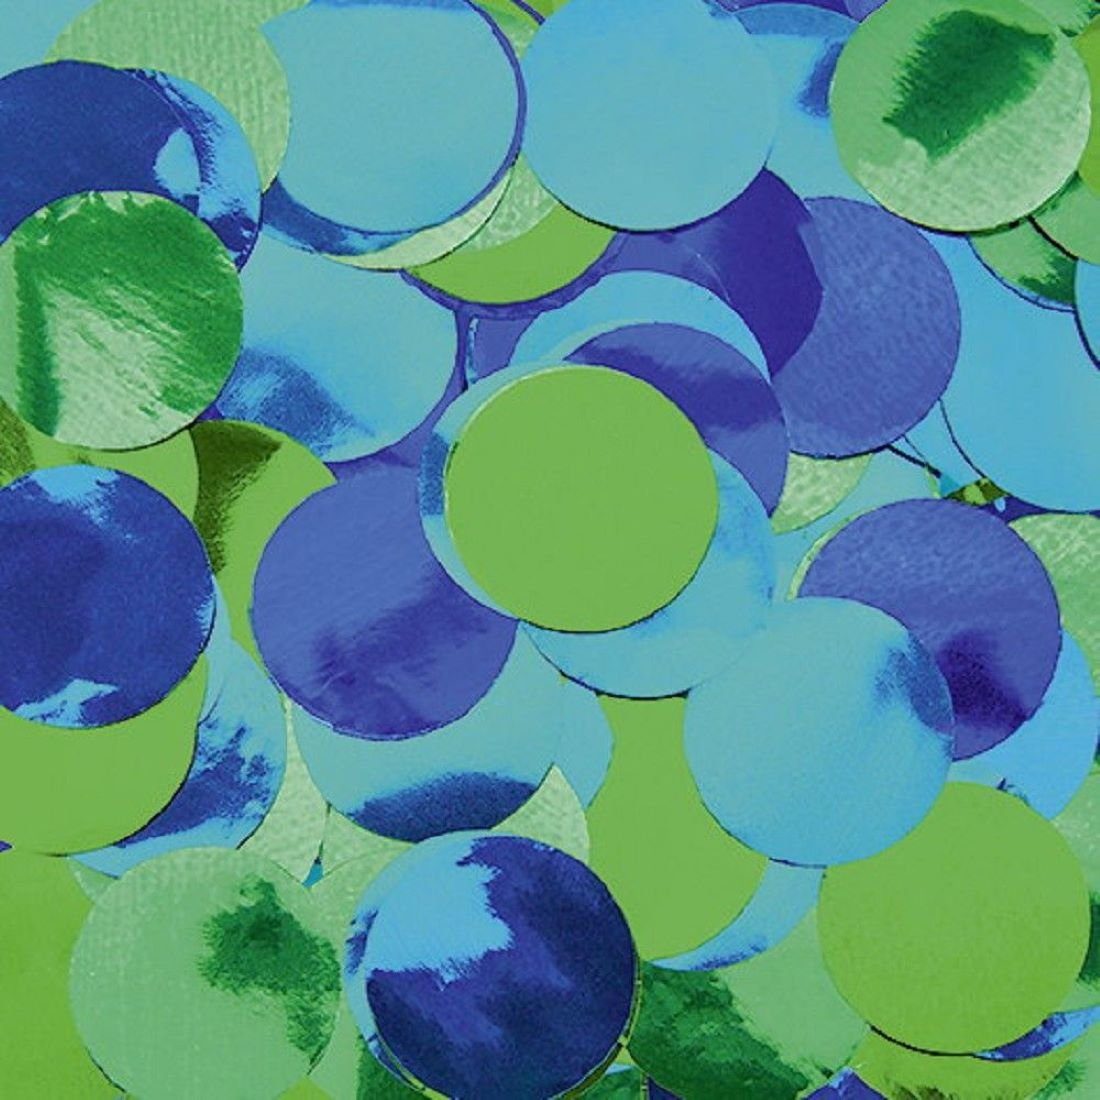 Luftballonwelt Konfetti Konfetti Kreise Punkte Groß Glänzend Bunt 2 cm - 75 Gramm, Glänzendes Konfetti Blautöne